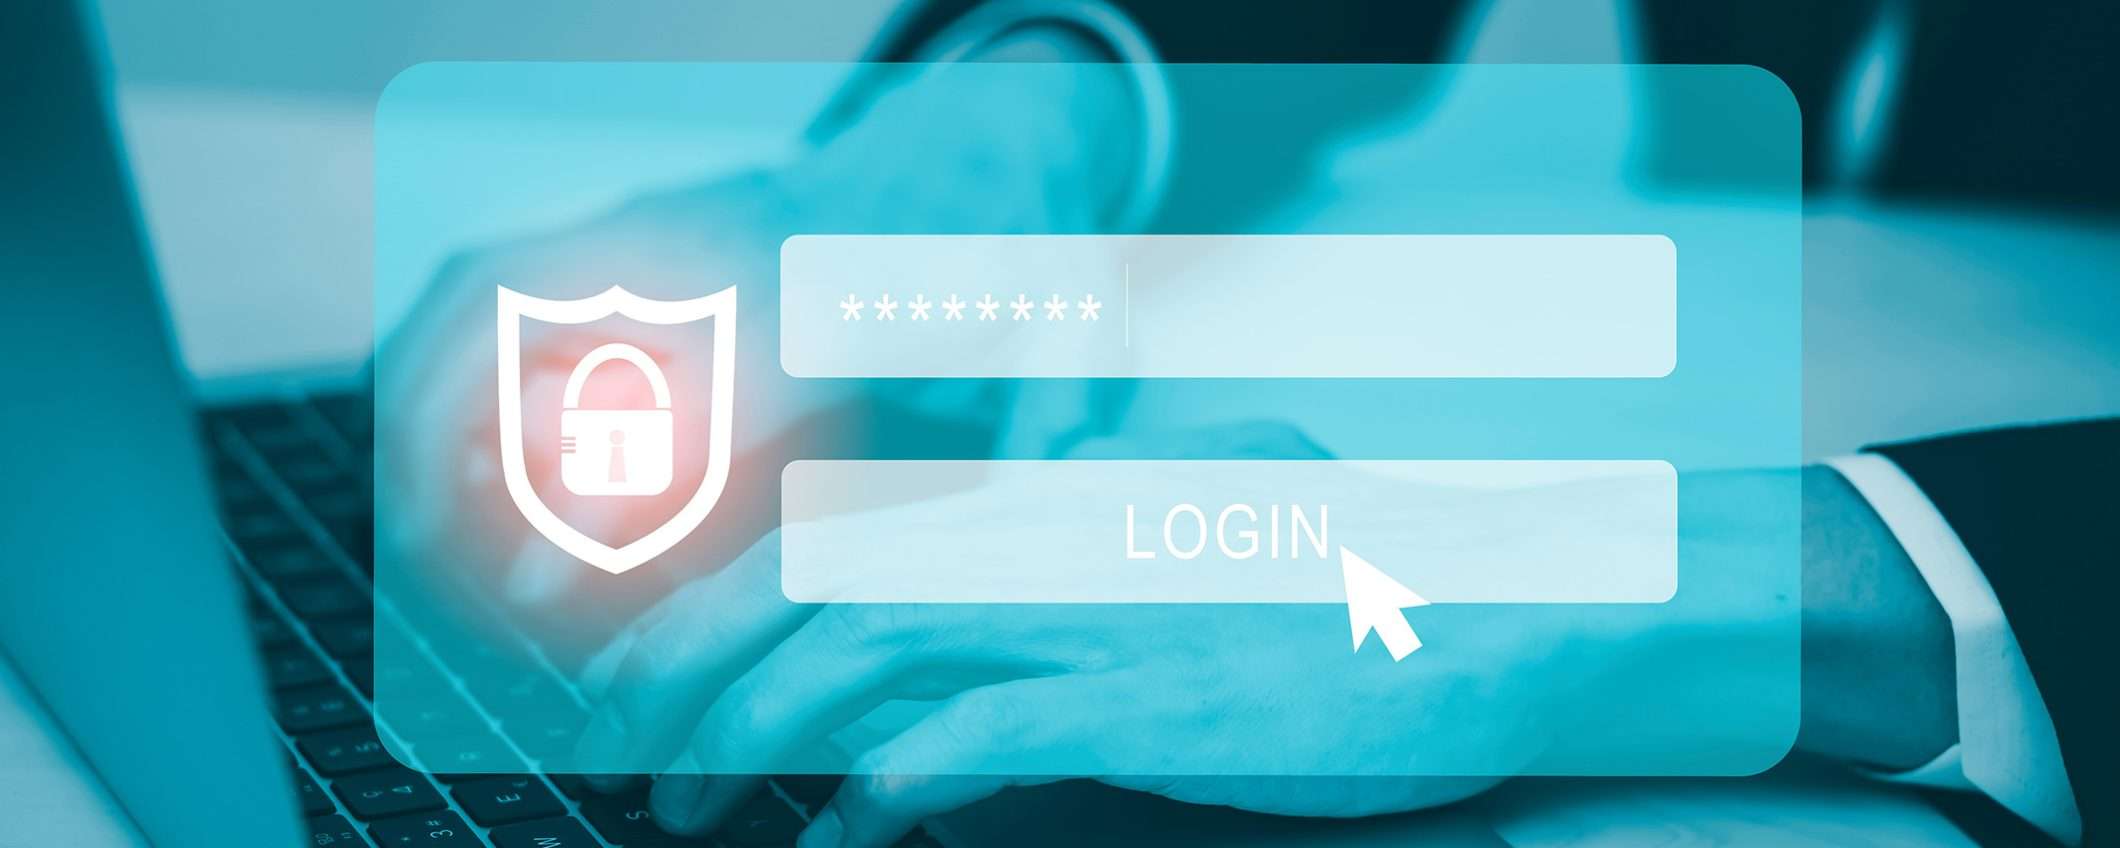 Elimina le password con LastPass: prova gratuita per 30 giorni